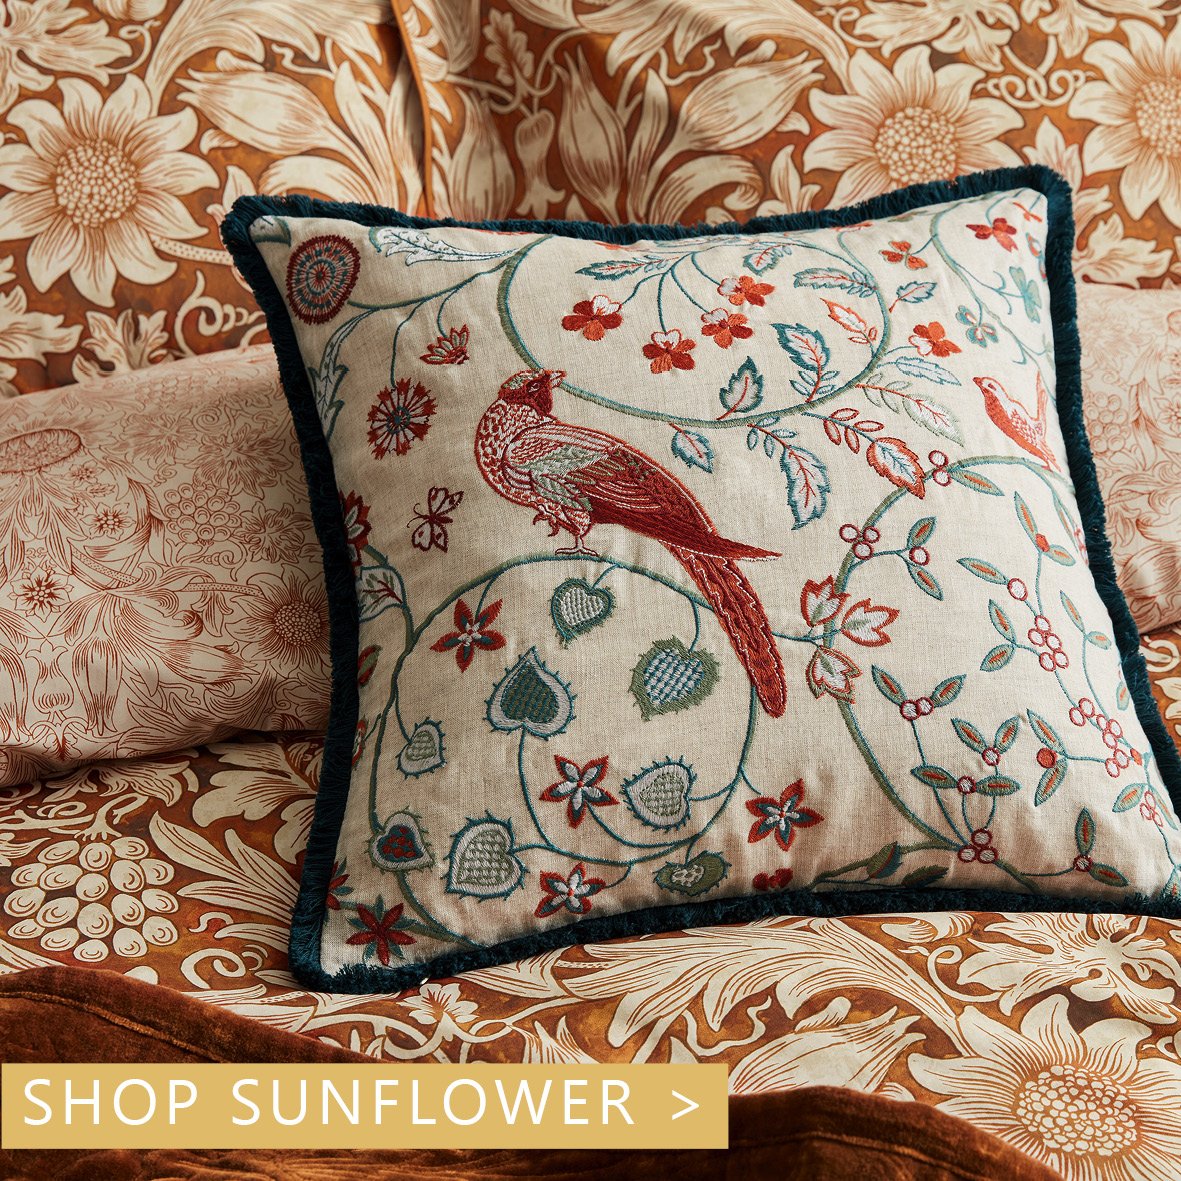 William Morris Sunflower Bedding in Saffron